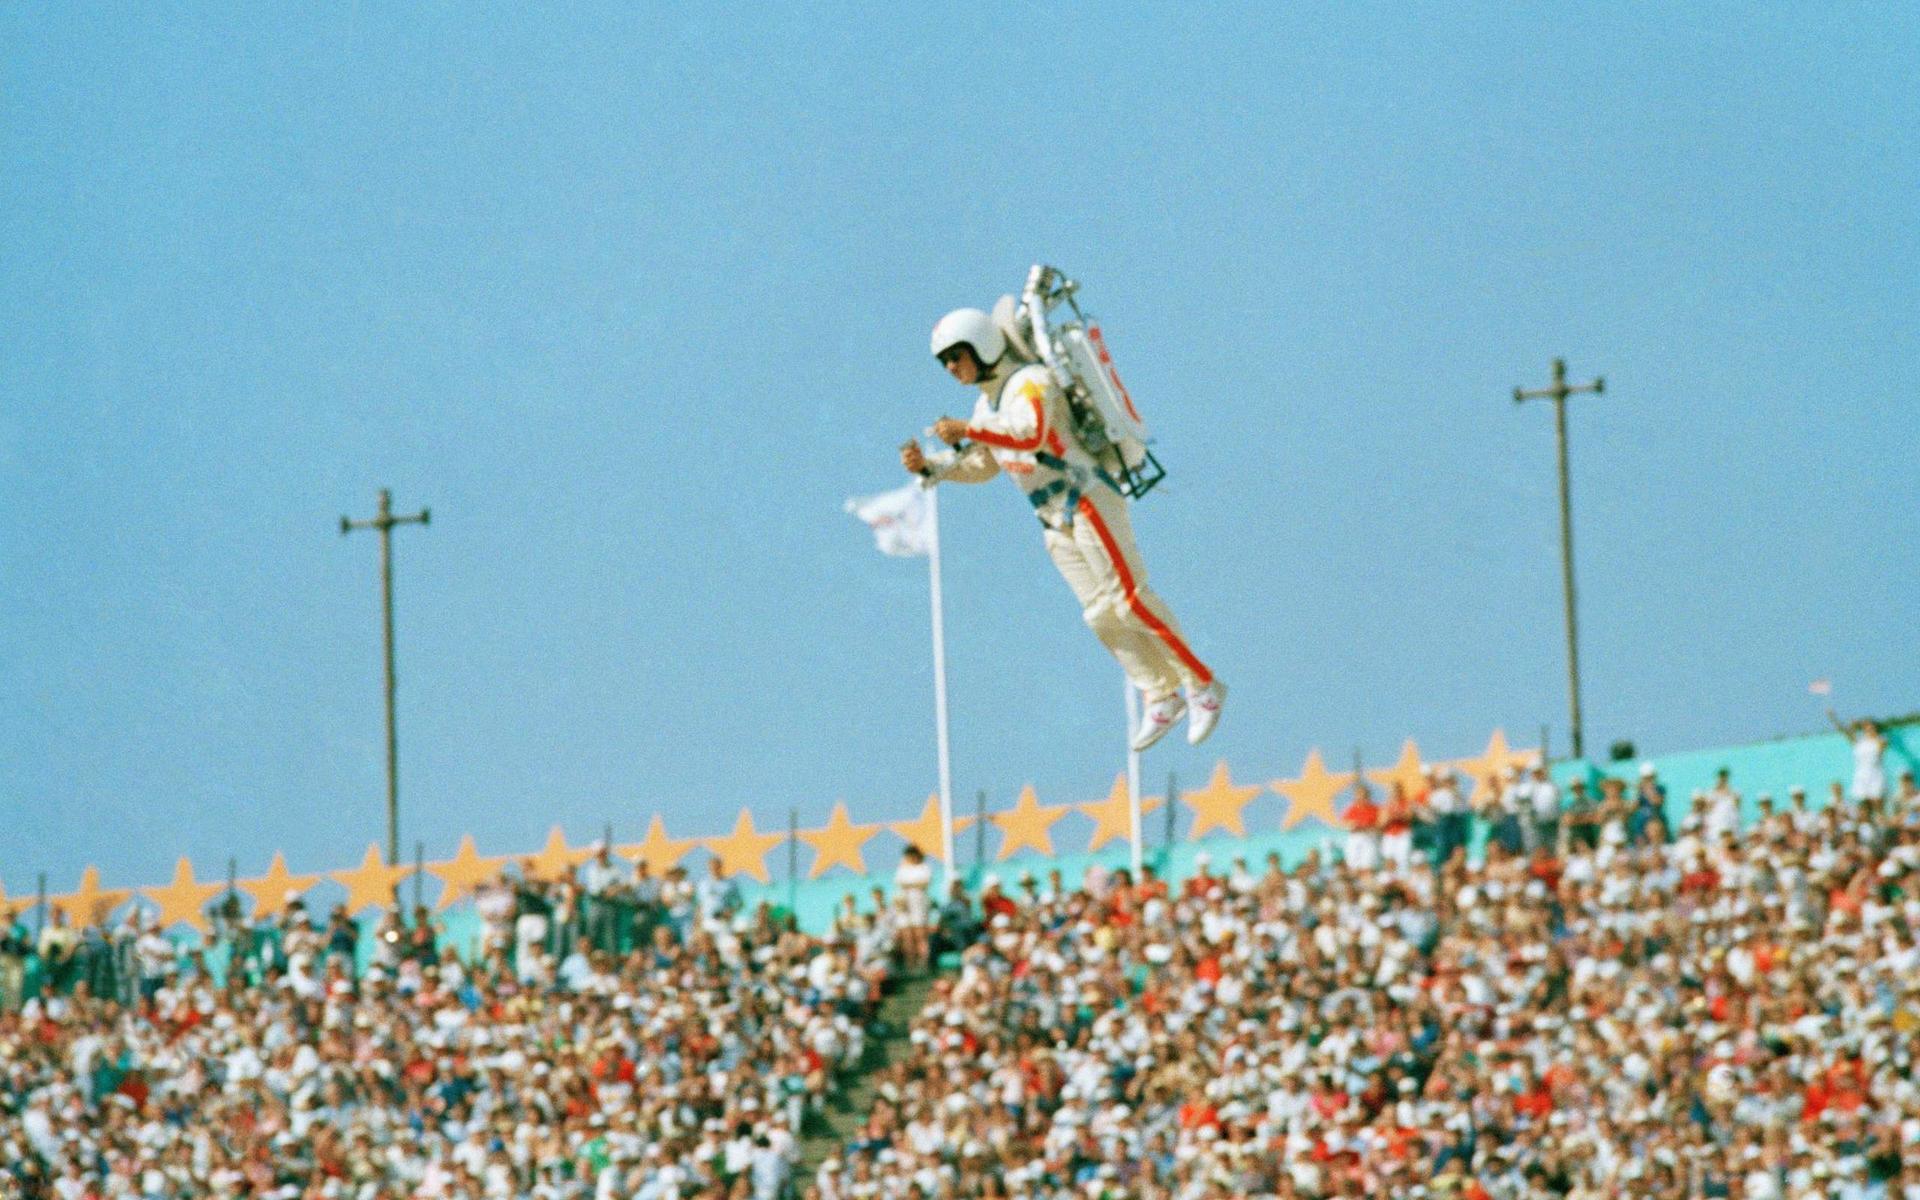 Vid invigningen av OS 1984 flög Bill Suiter &quot;Rocket Man&quot; med en jetpack.